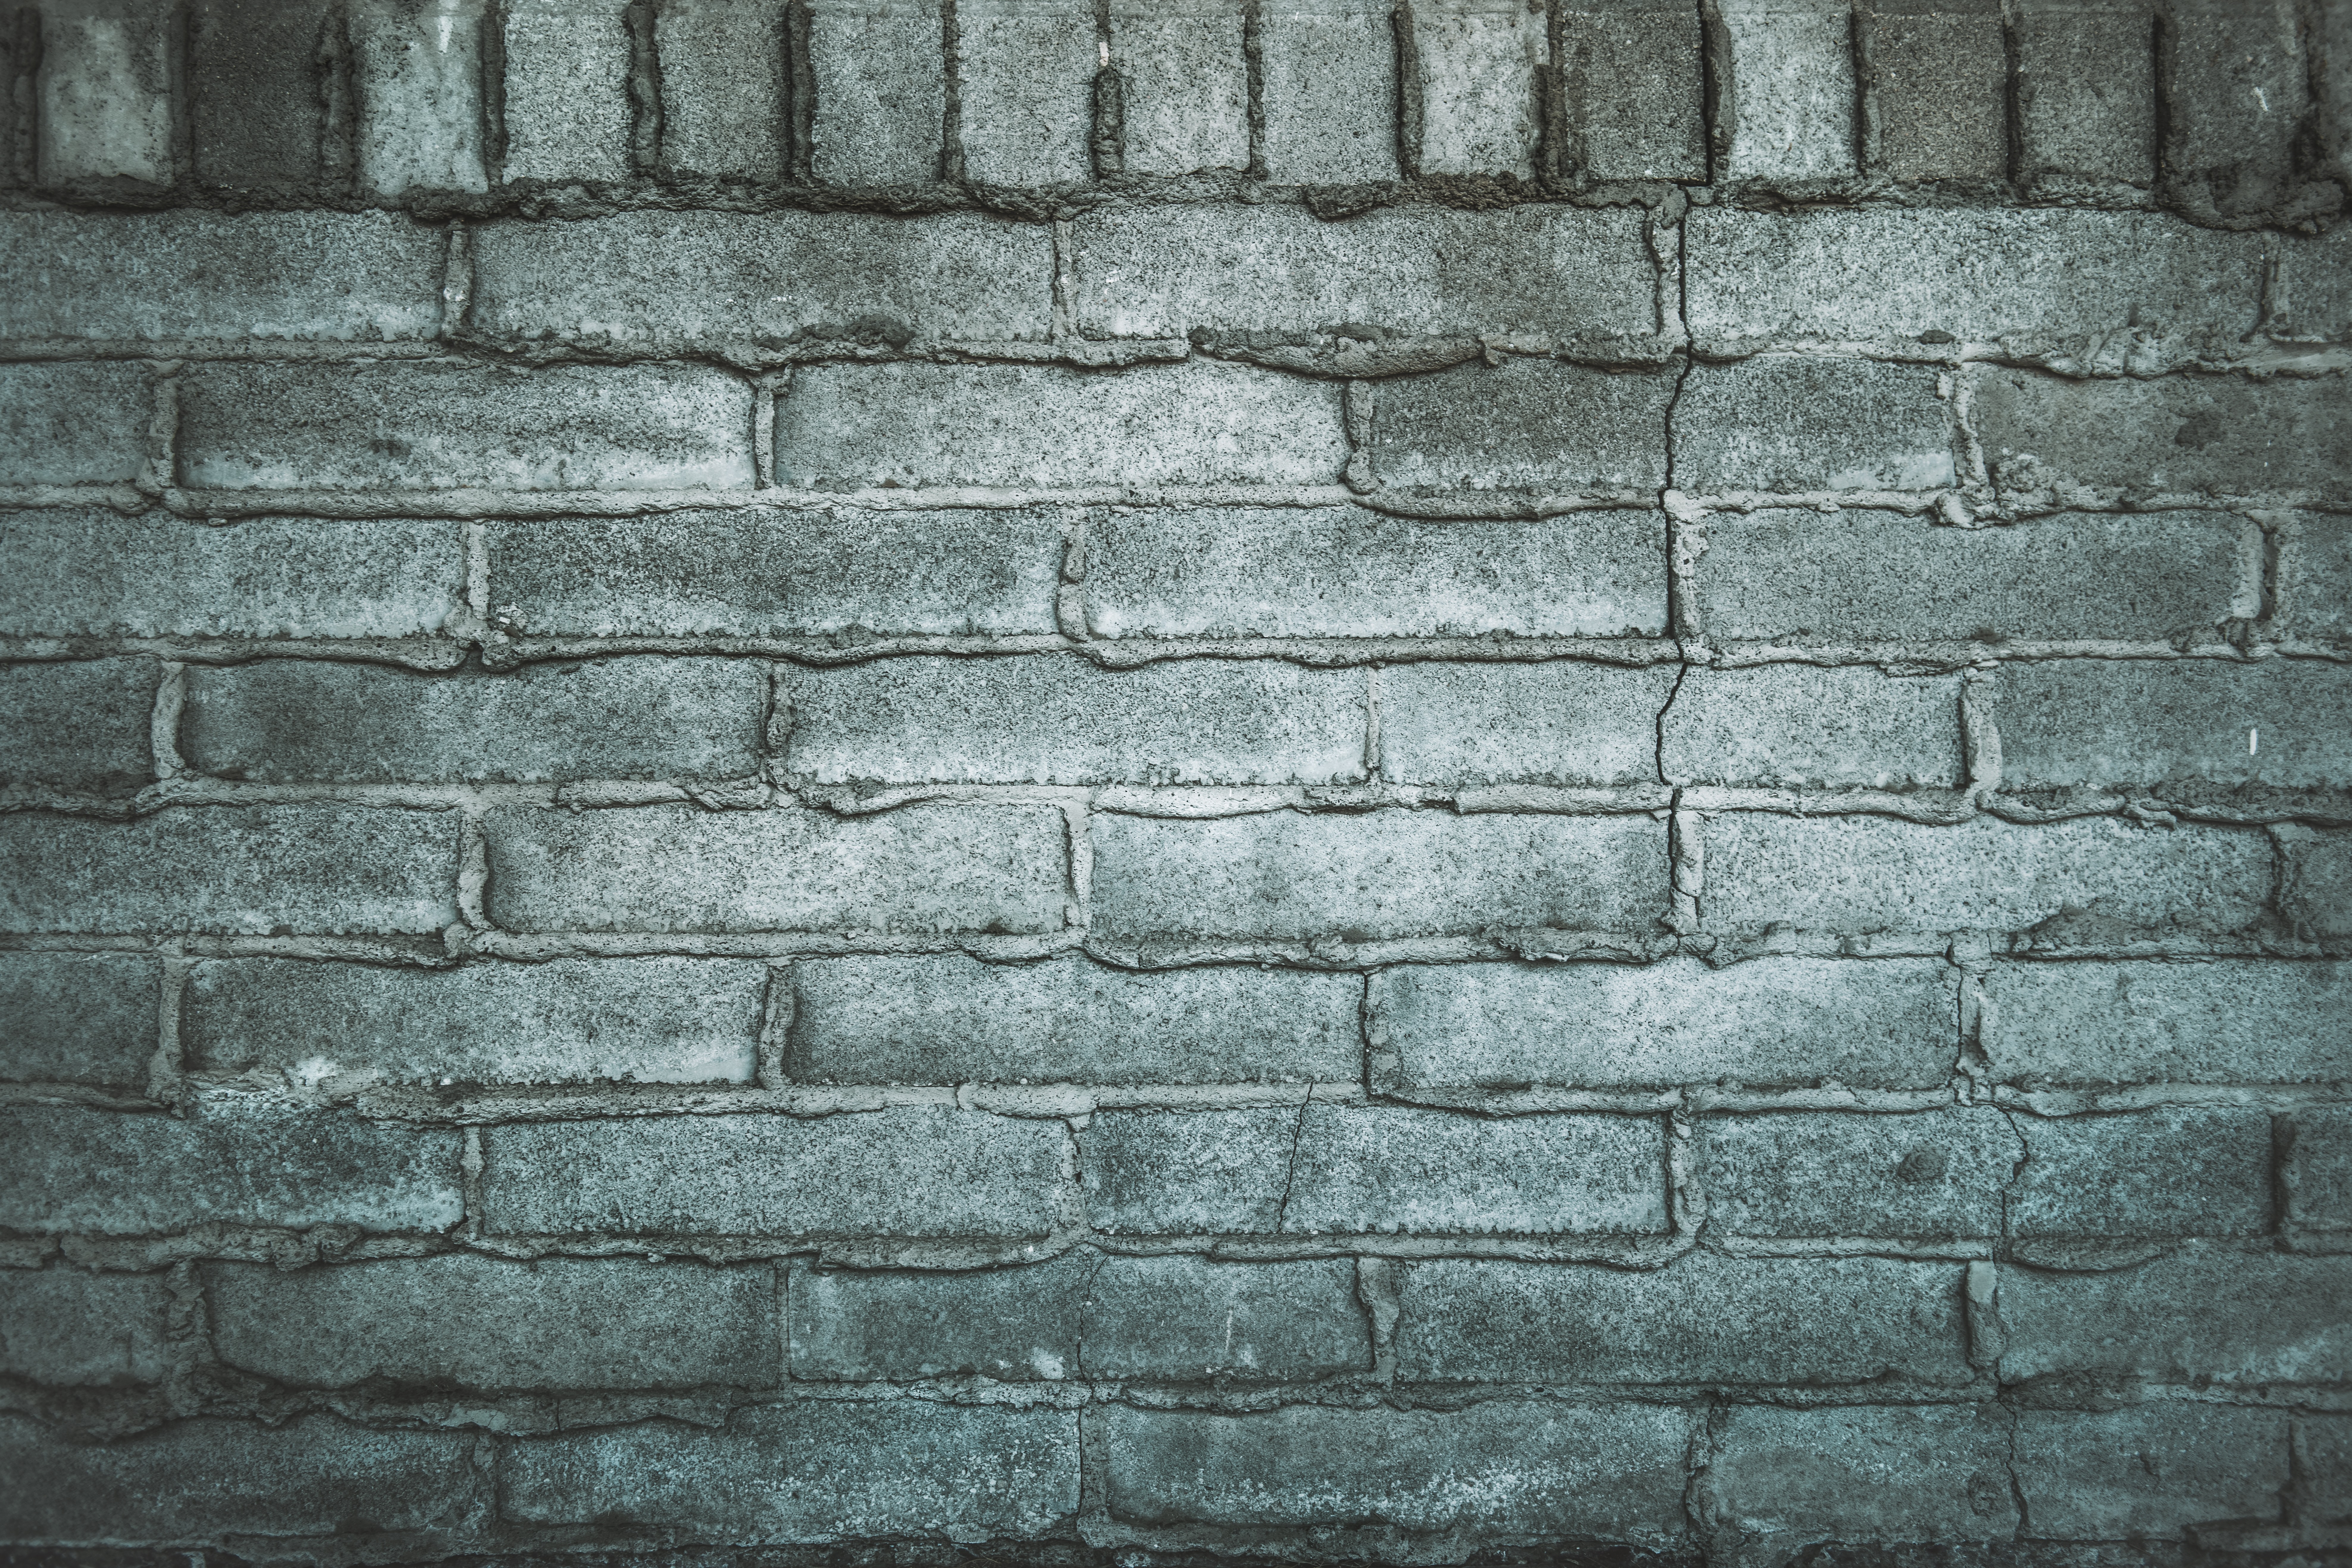 bricks, texture, textures, wall, grey, brick wall